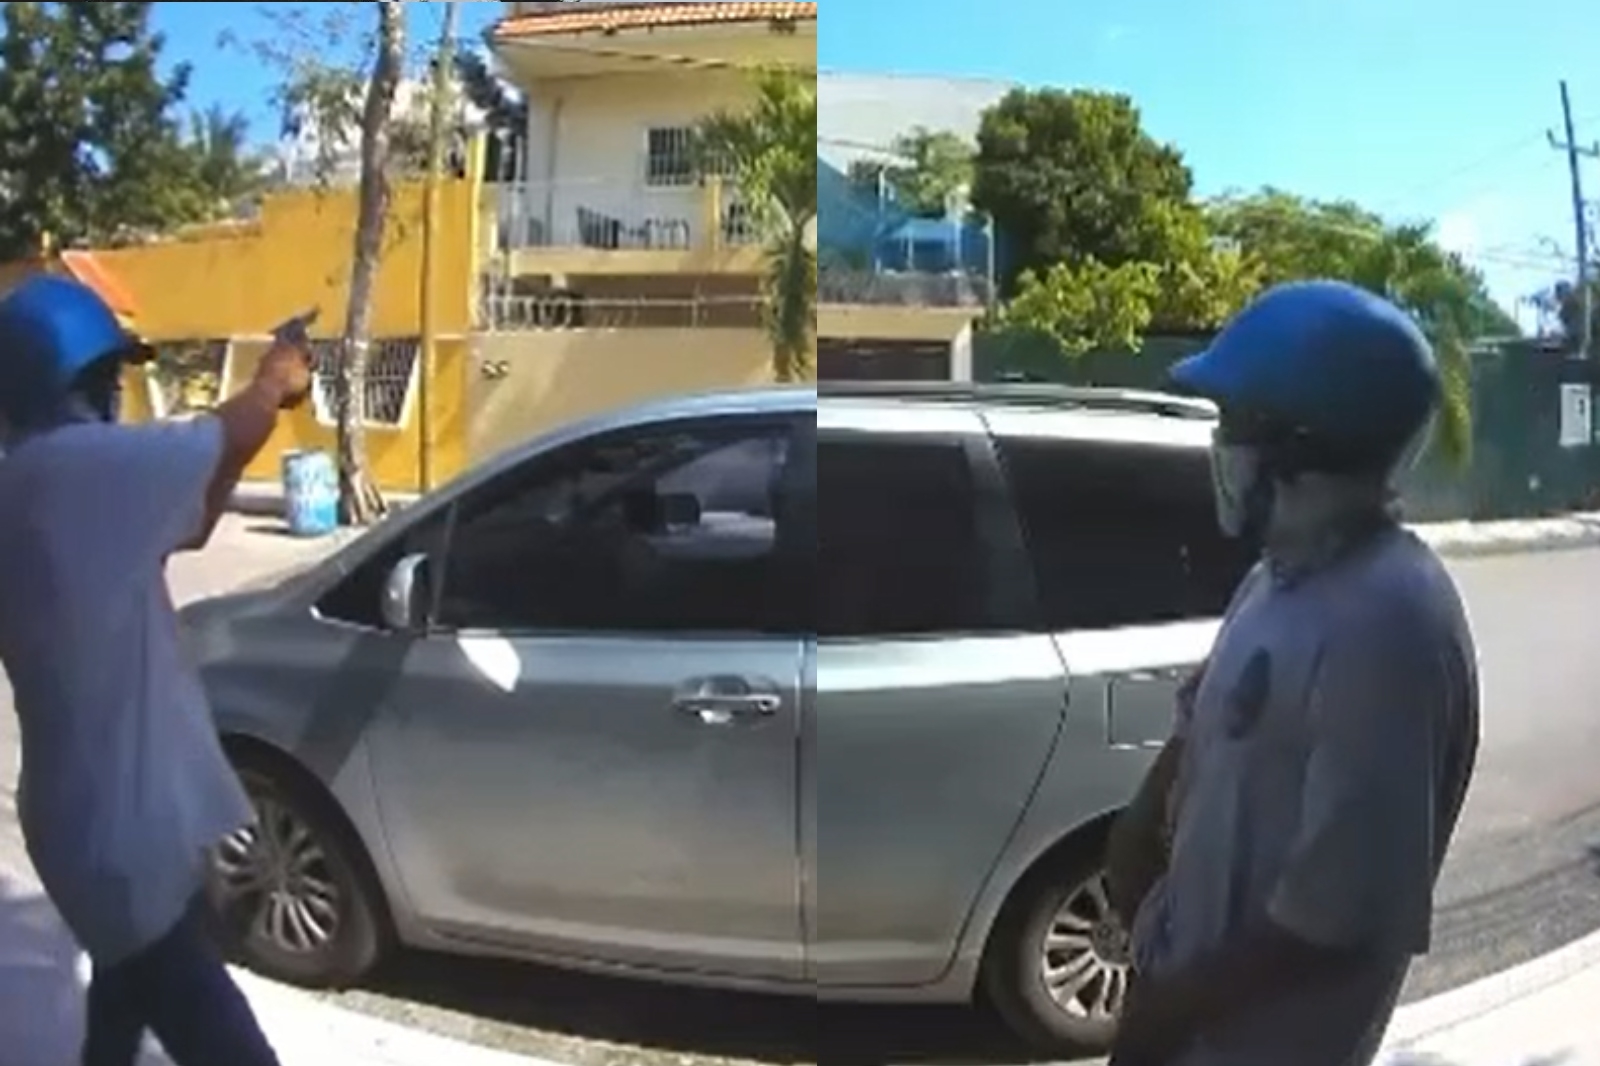 Captan momento en que un hombre dispara contra una casa en la Riviera Maya: VIDEO